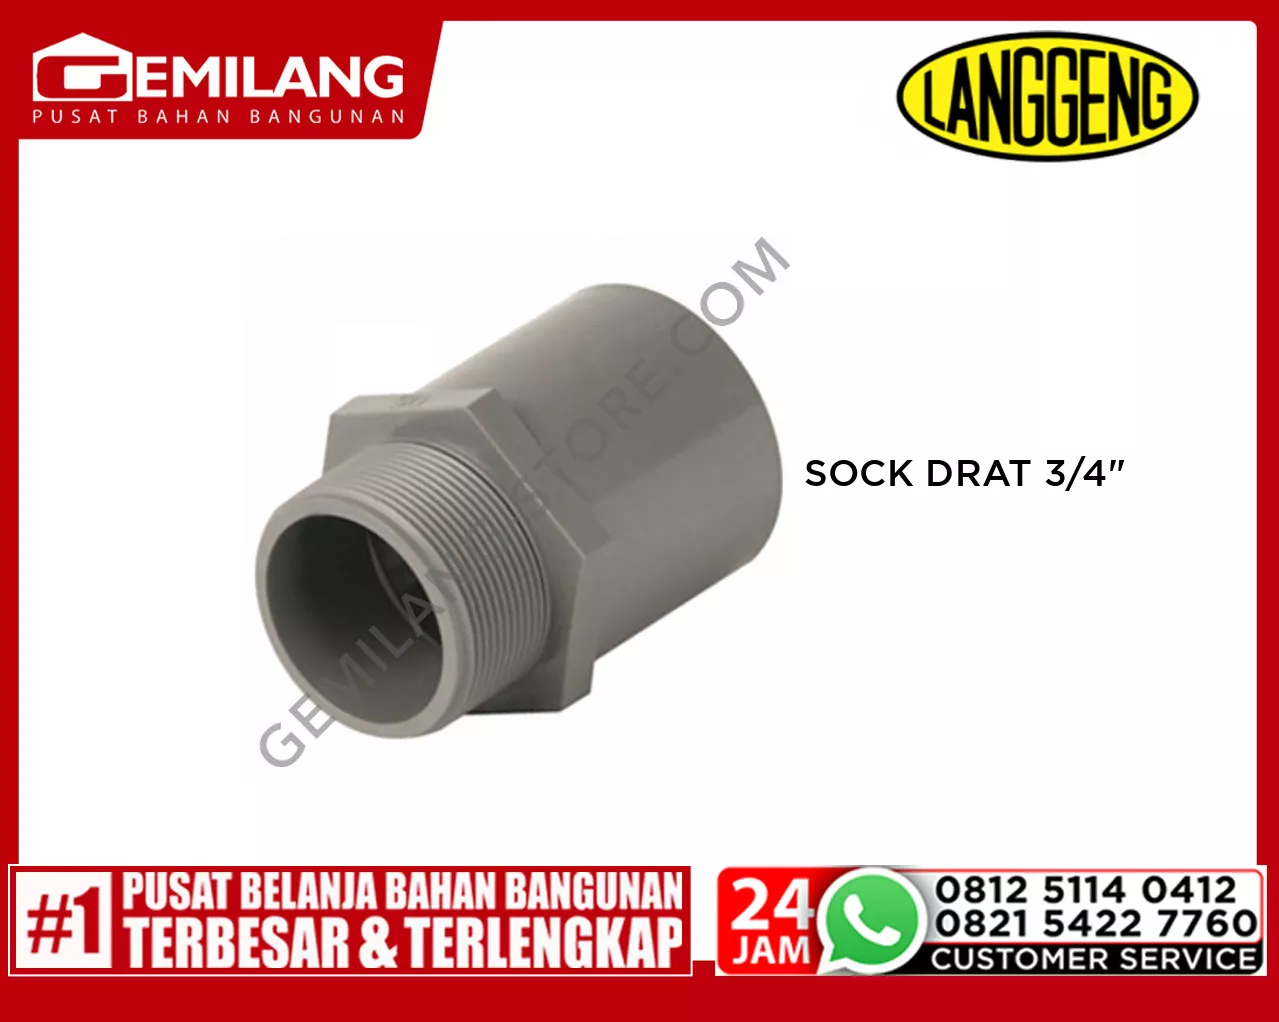 LANGGENG SOCK DRAT LUAR PVC 3/4inch